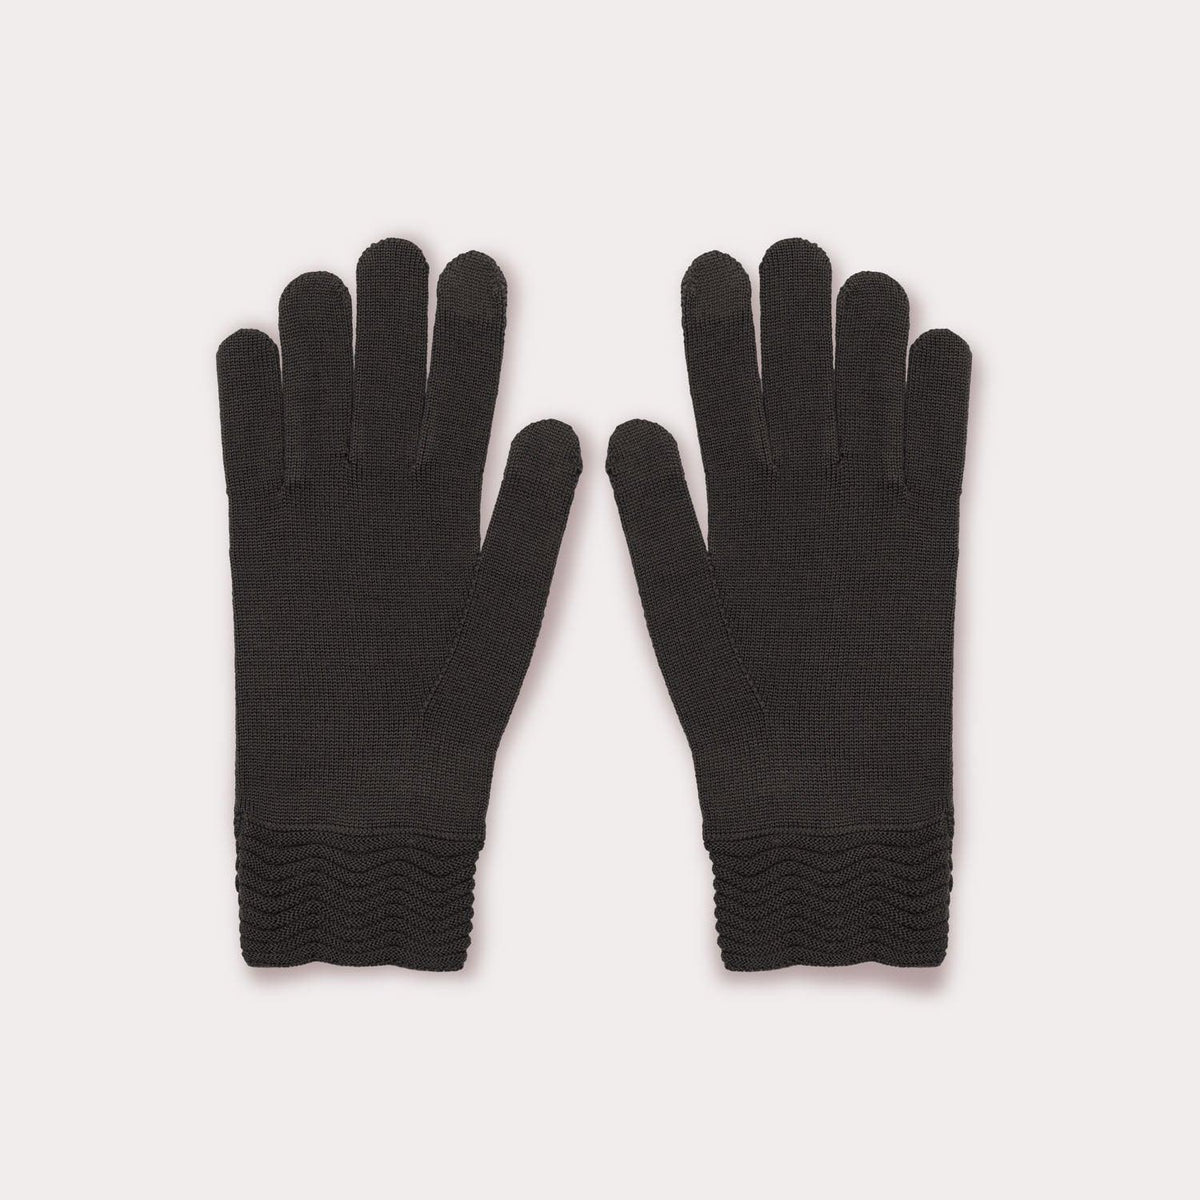 Black wool tech gallery gloves by Seymoure Gloves.